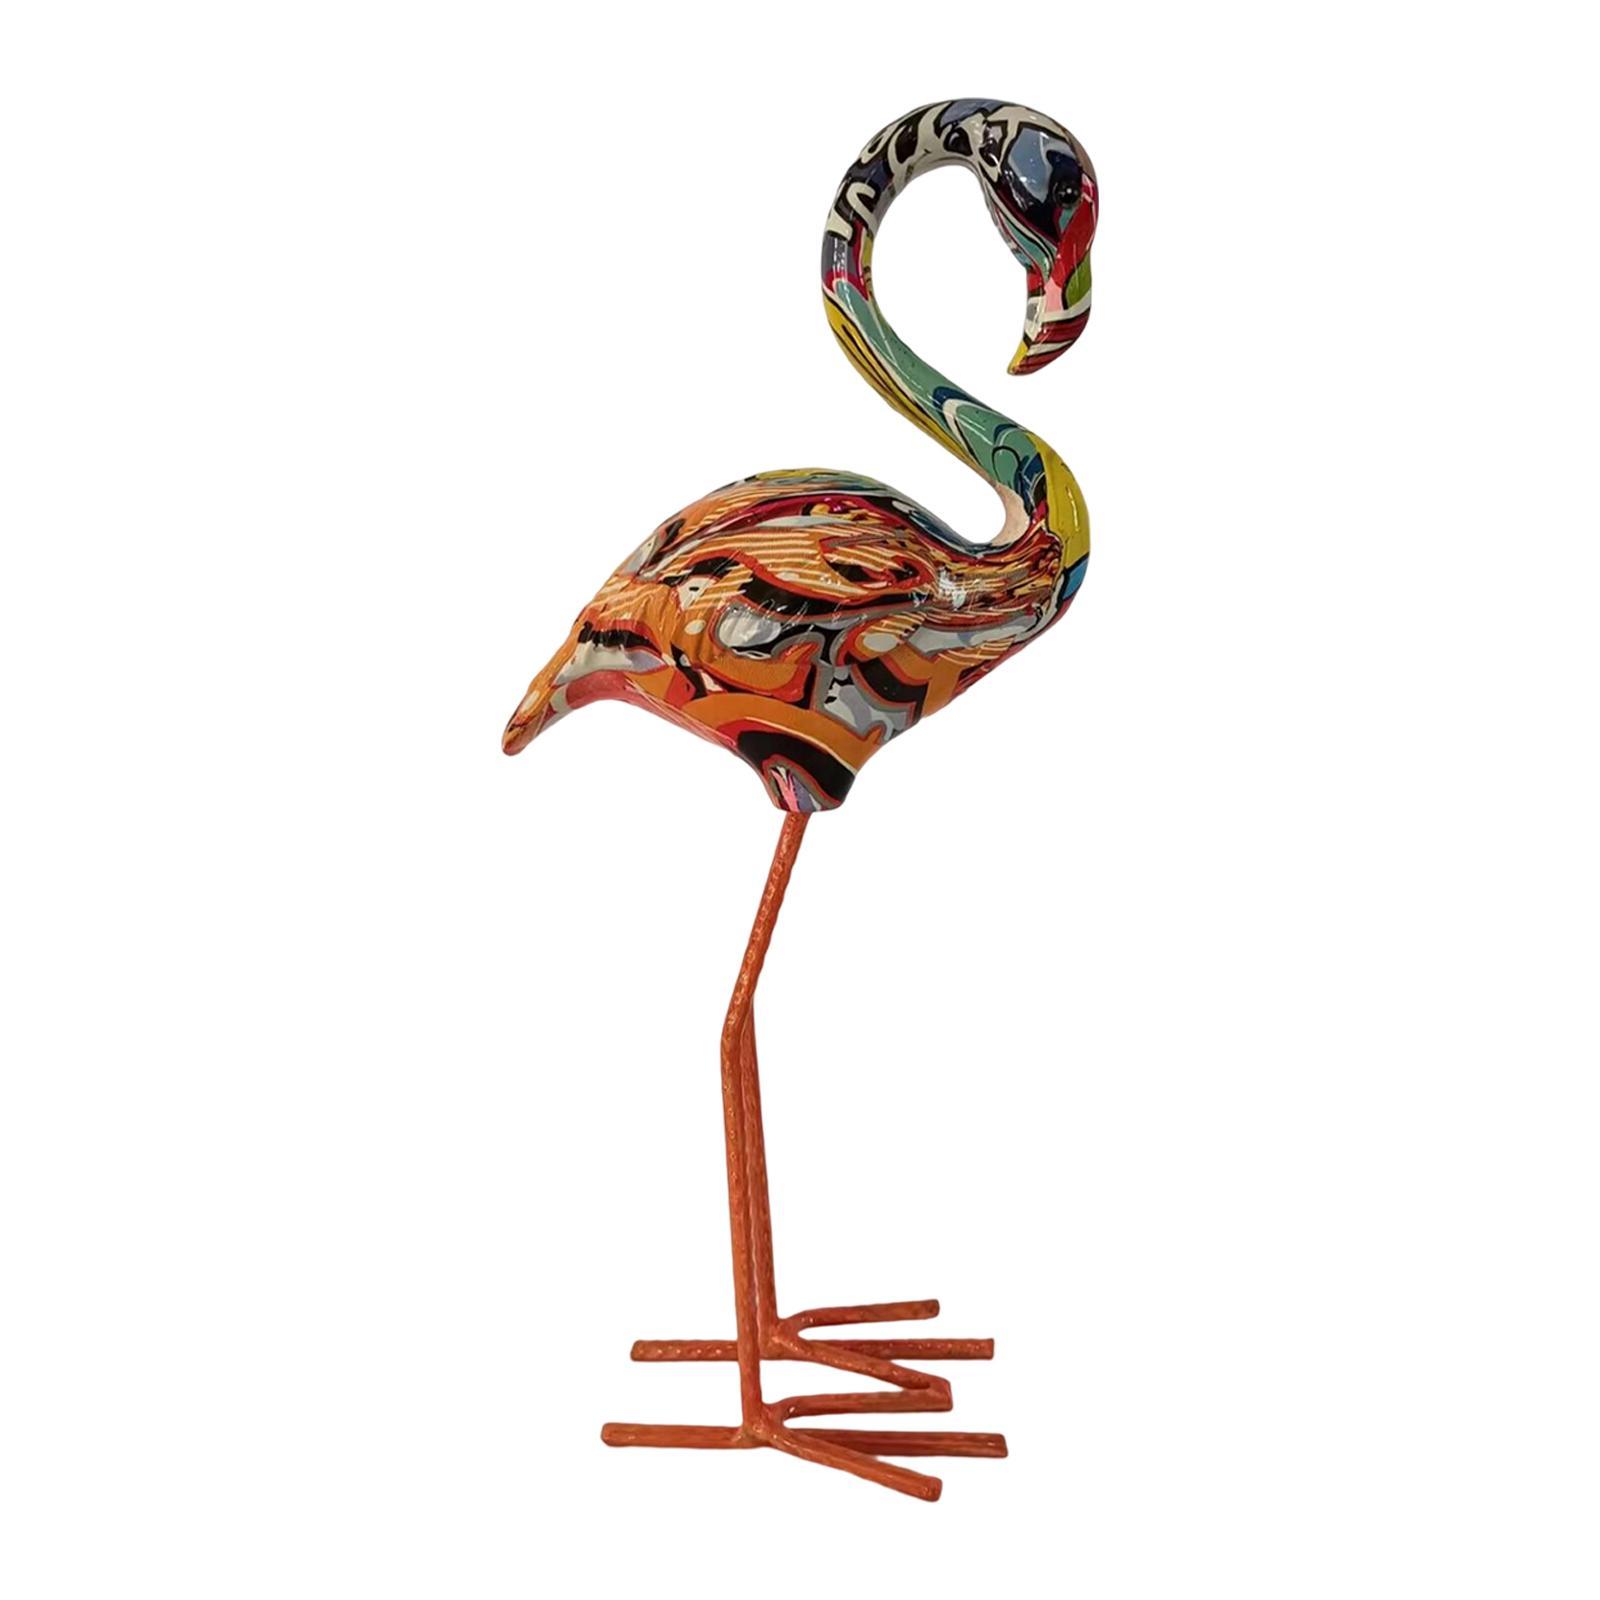 Flamingo Garden Statue Birds Sculptures Home Resin Figurines for Yard Window